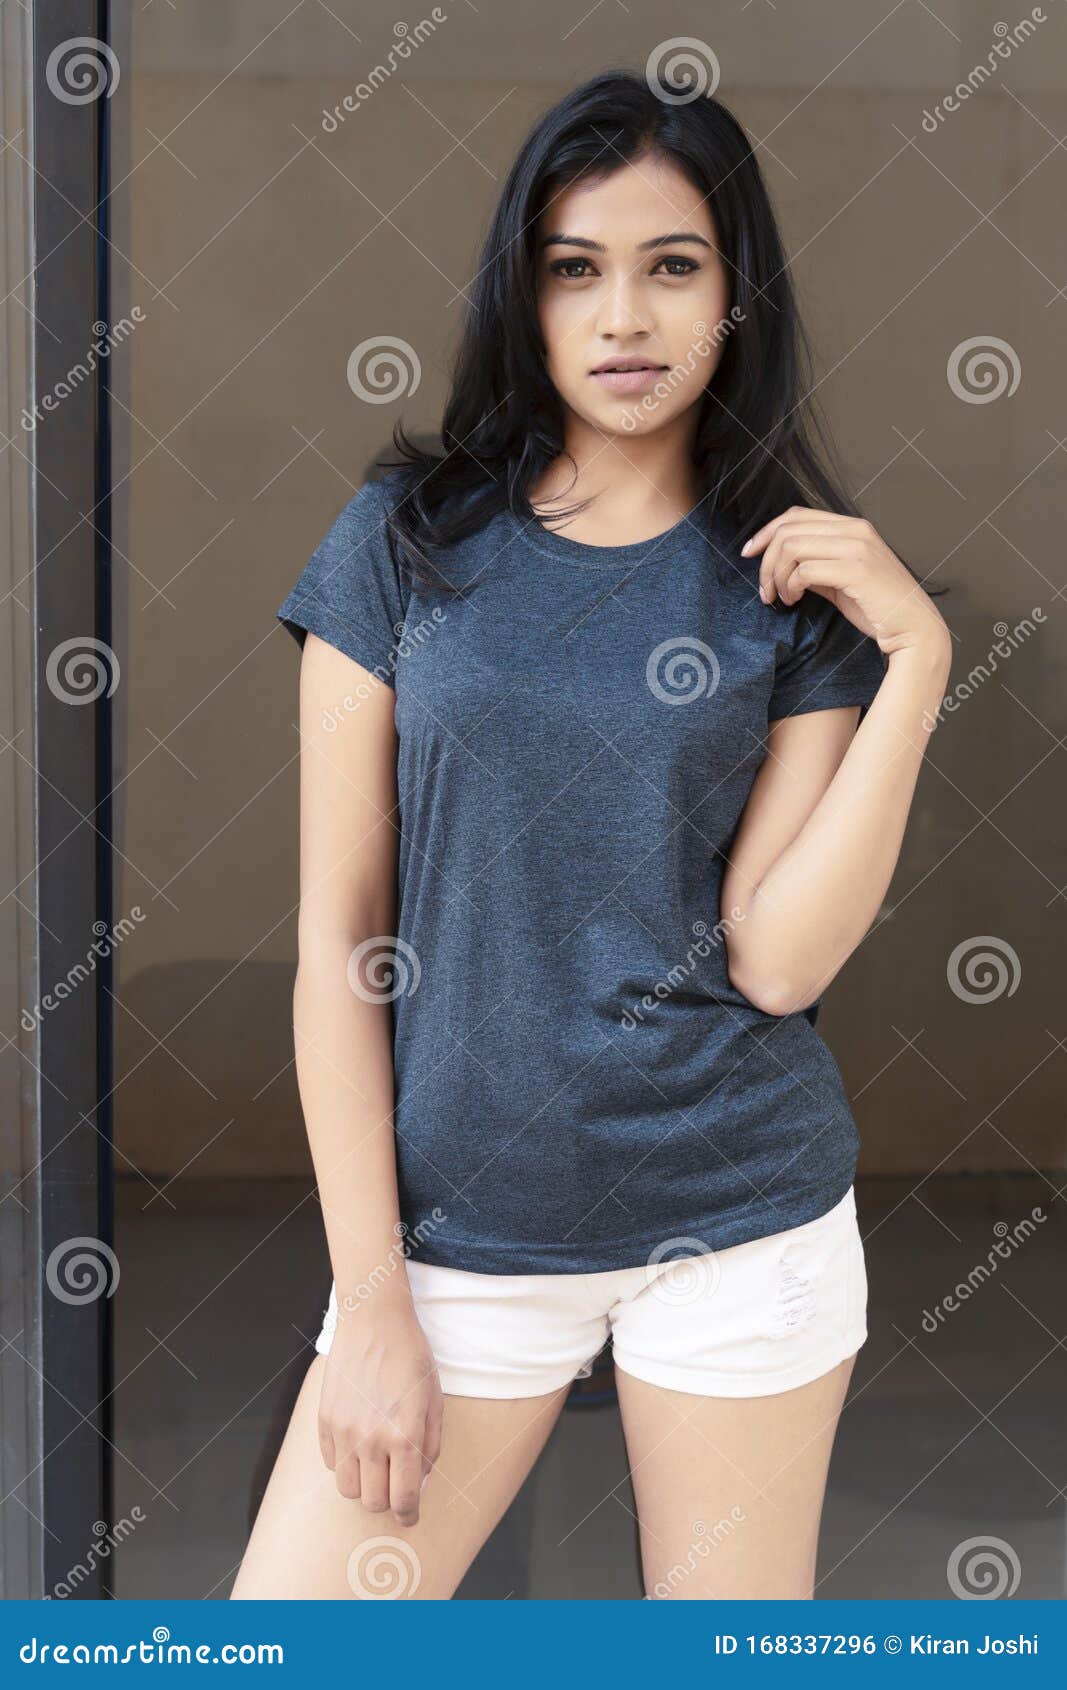 indian girls in shirt hot